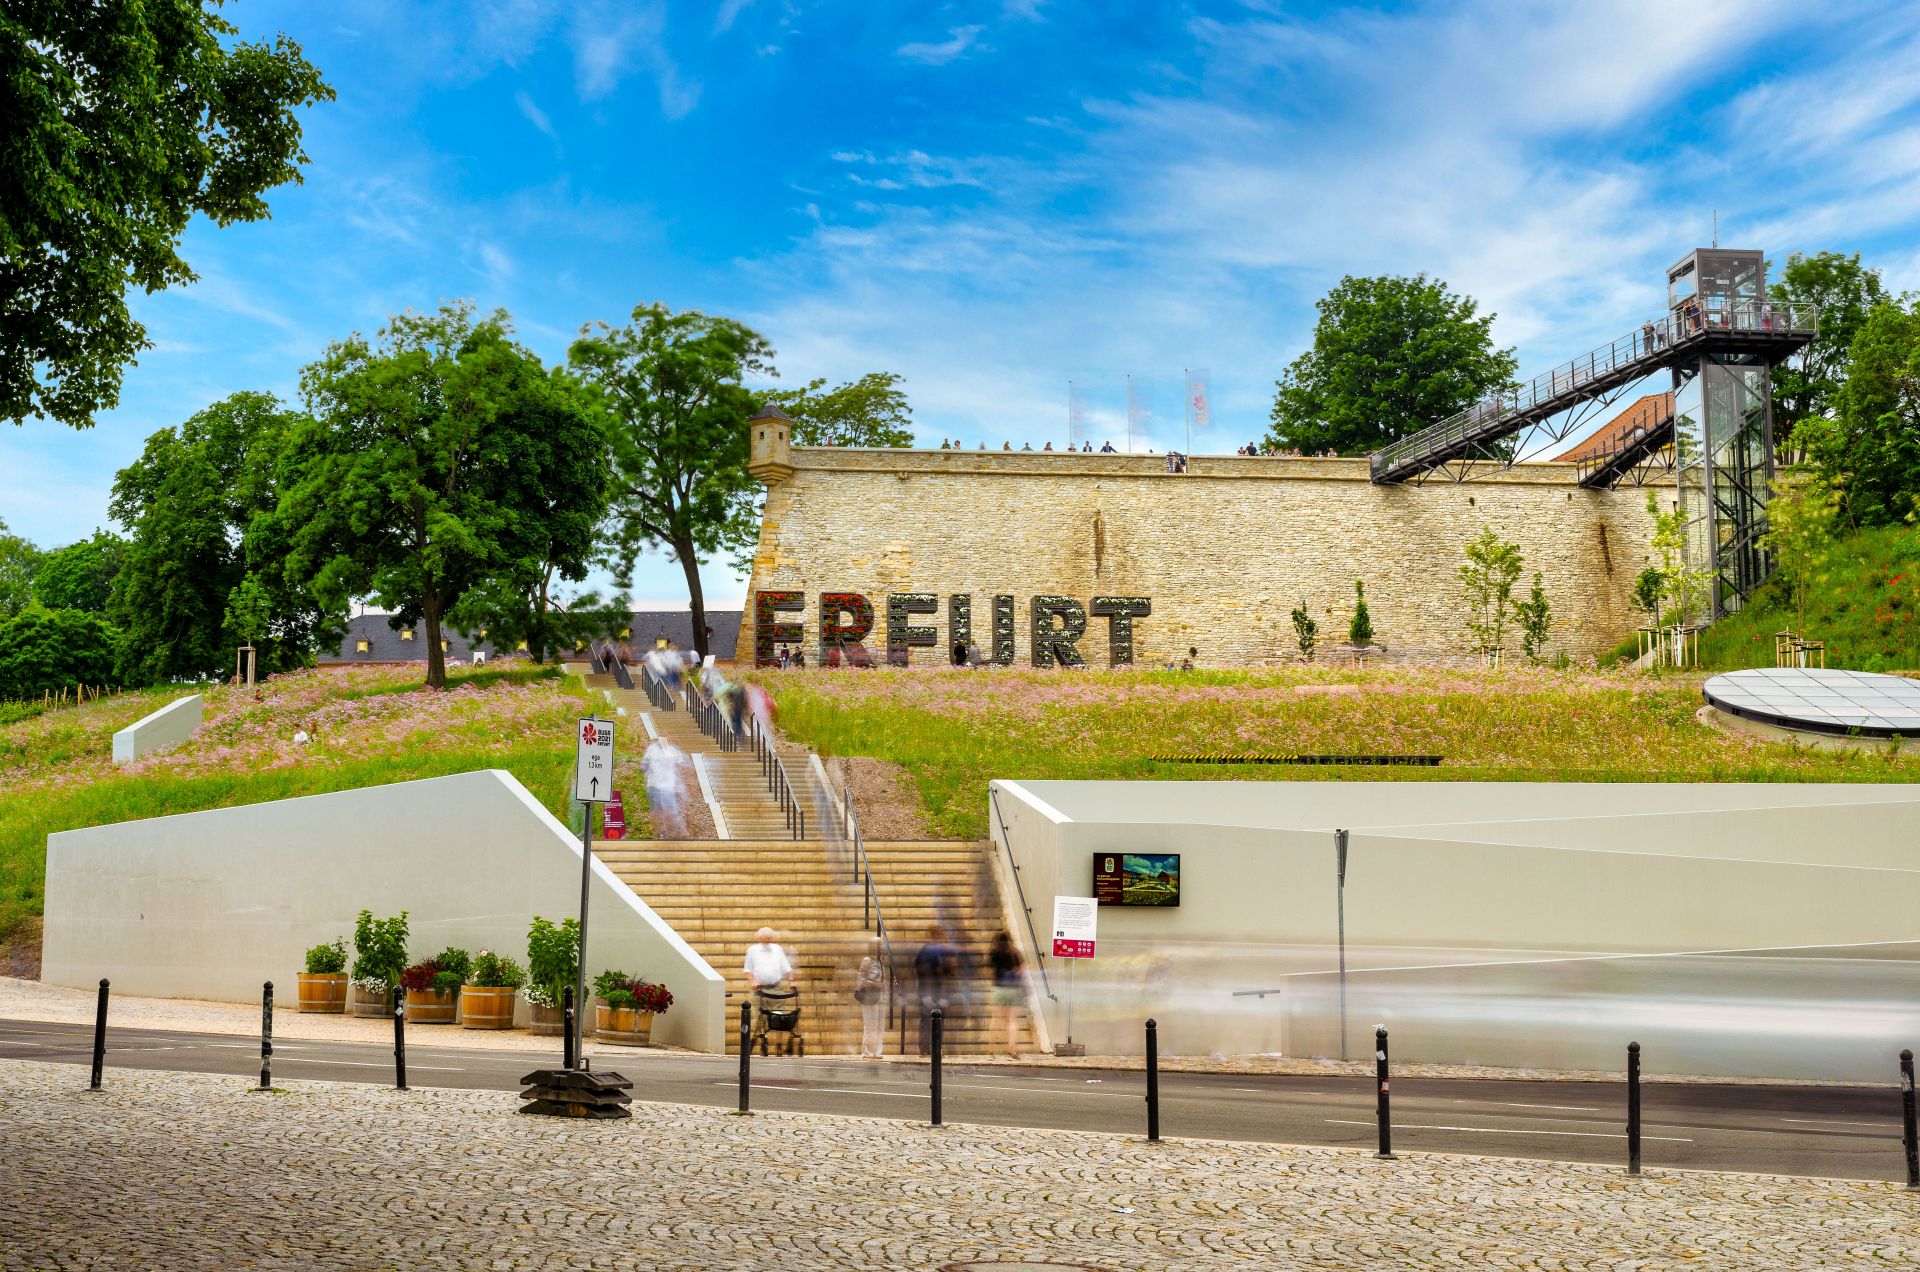 STRATEGPRO in Erfurt: dargestellt durch den Erfurt-Schriftzug auf dem Erfurter Peterberg – ca. einen Kilometer entfernt von STRATEGPRO Erfurt.